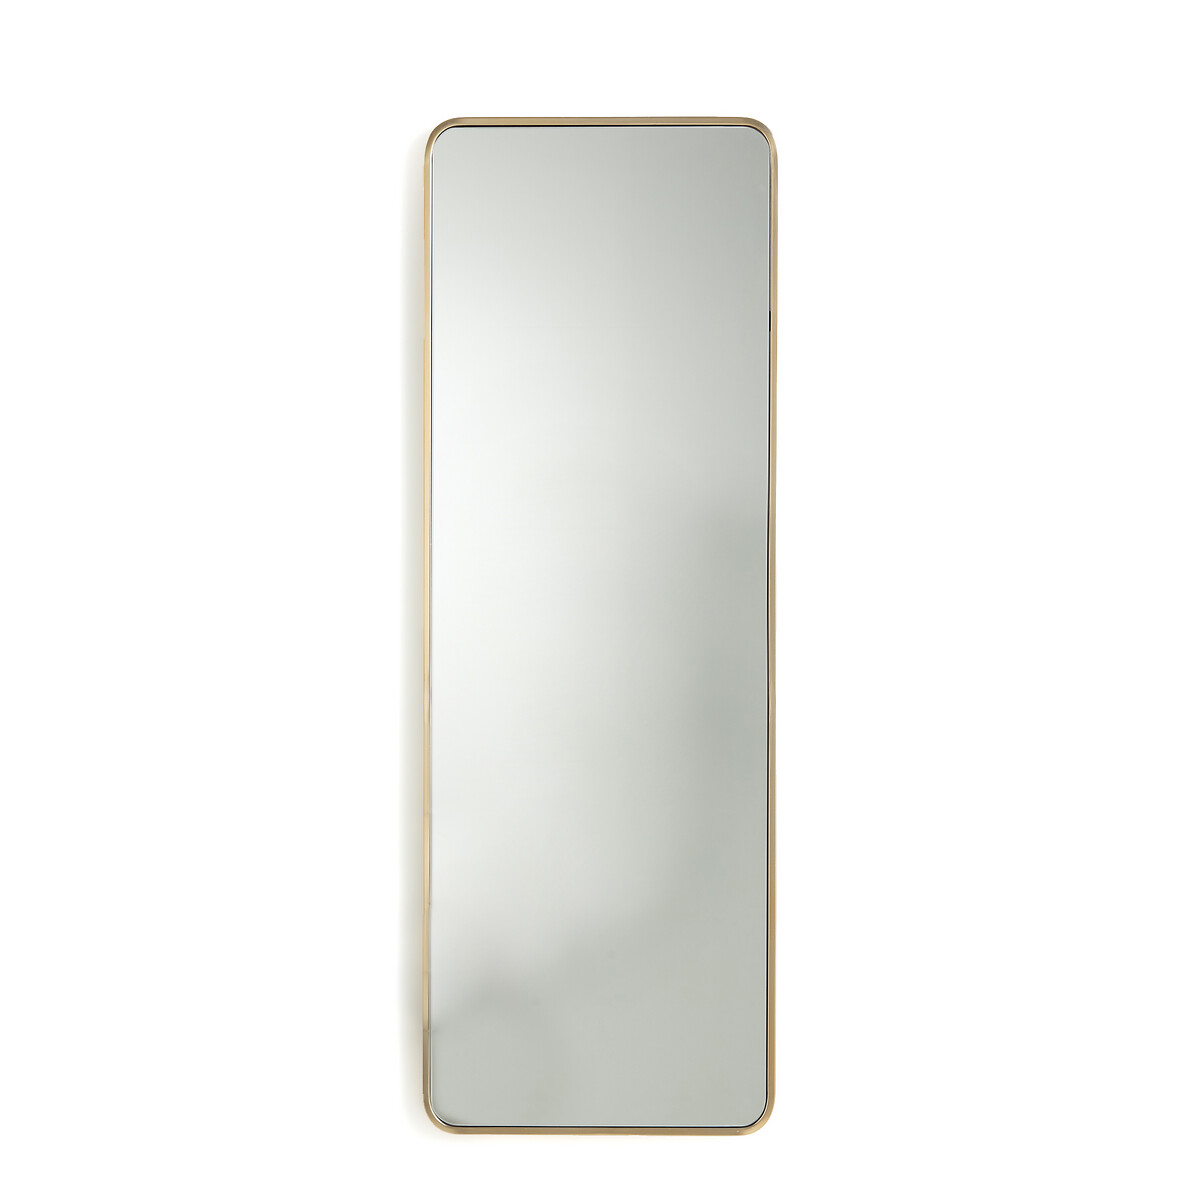 Зеркало с отделкой металлом В120 см Iodus единый размер желтый зеркало квадратное с отделкой металлом в90 см iodus единый размер желтый